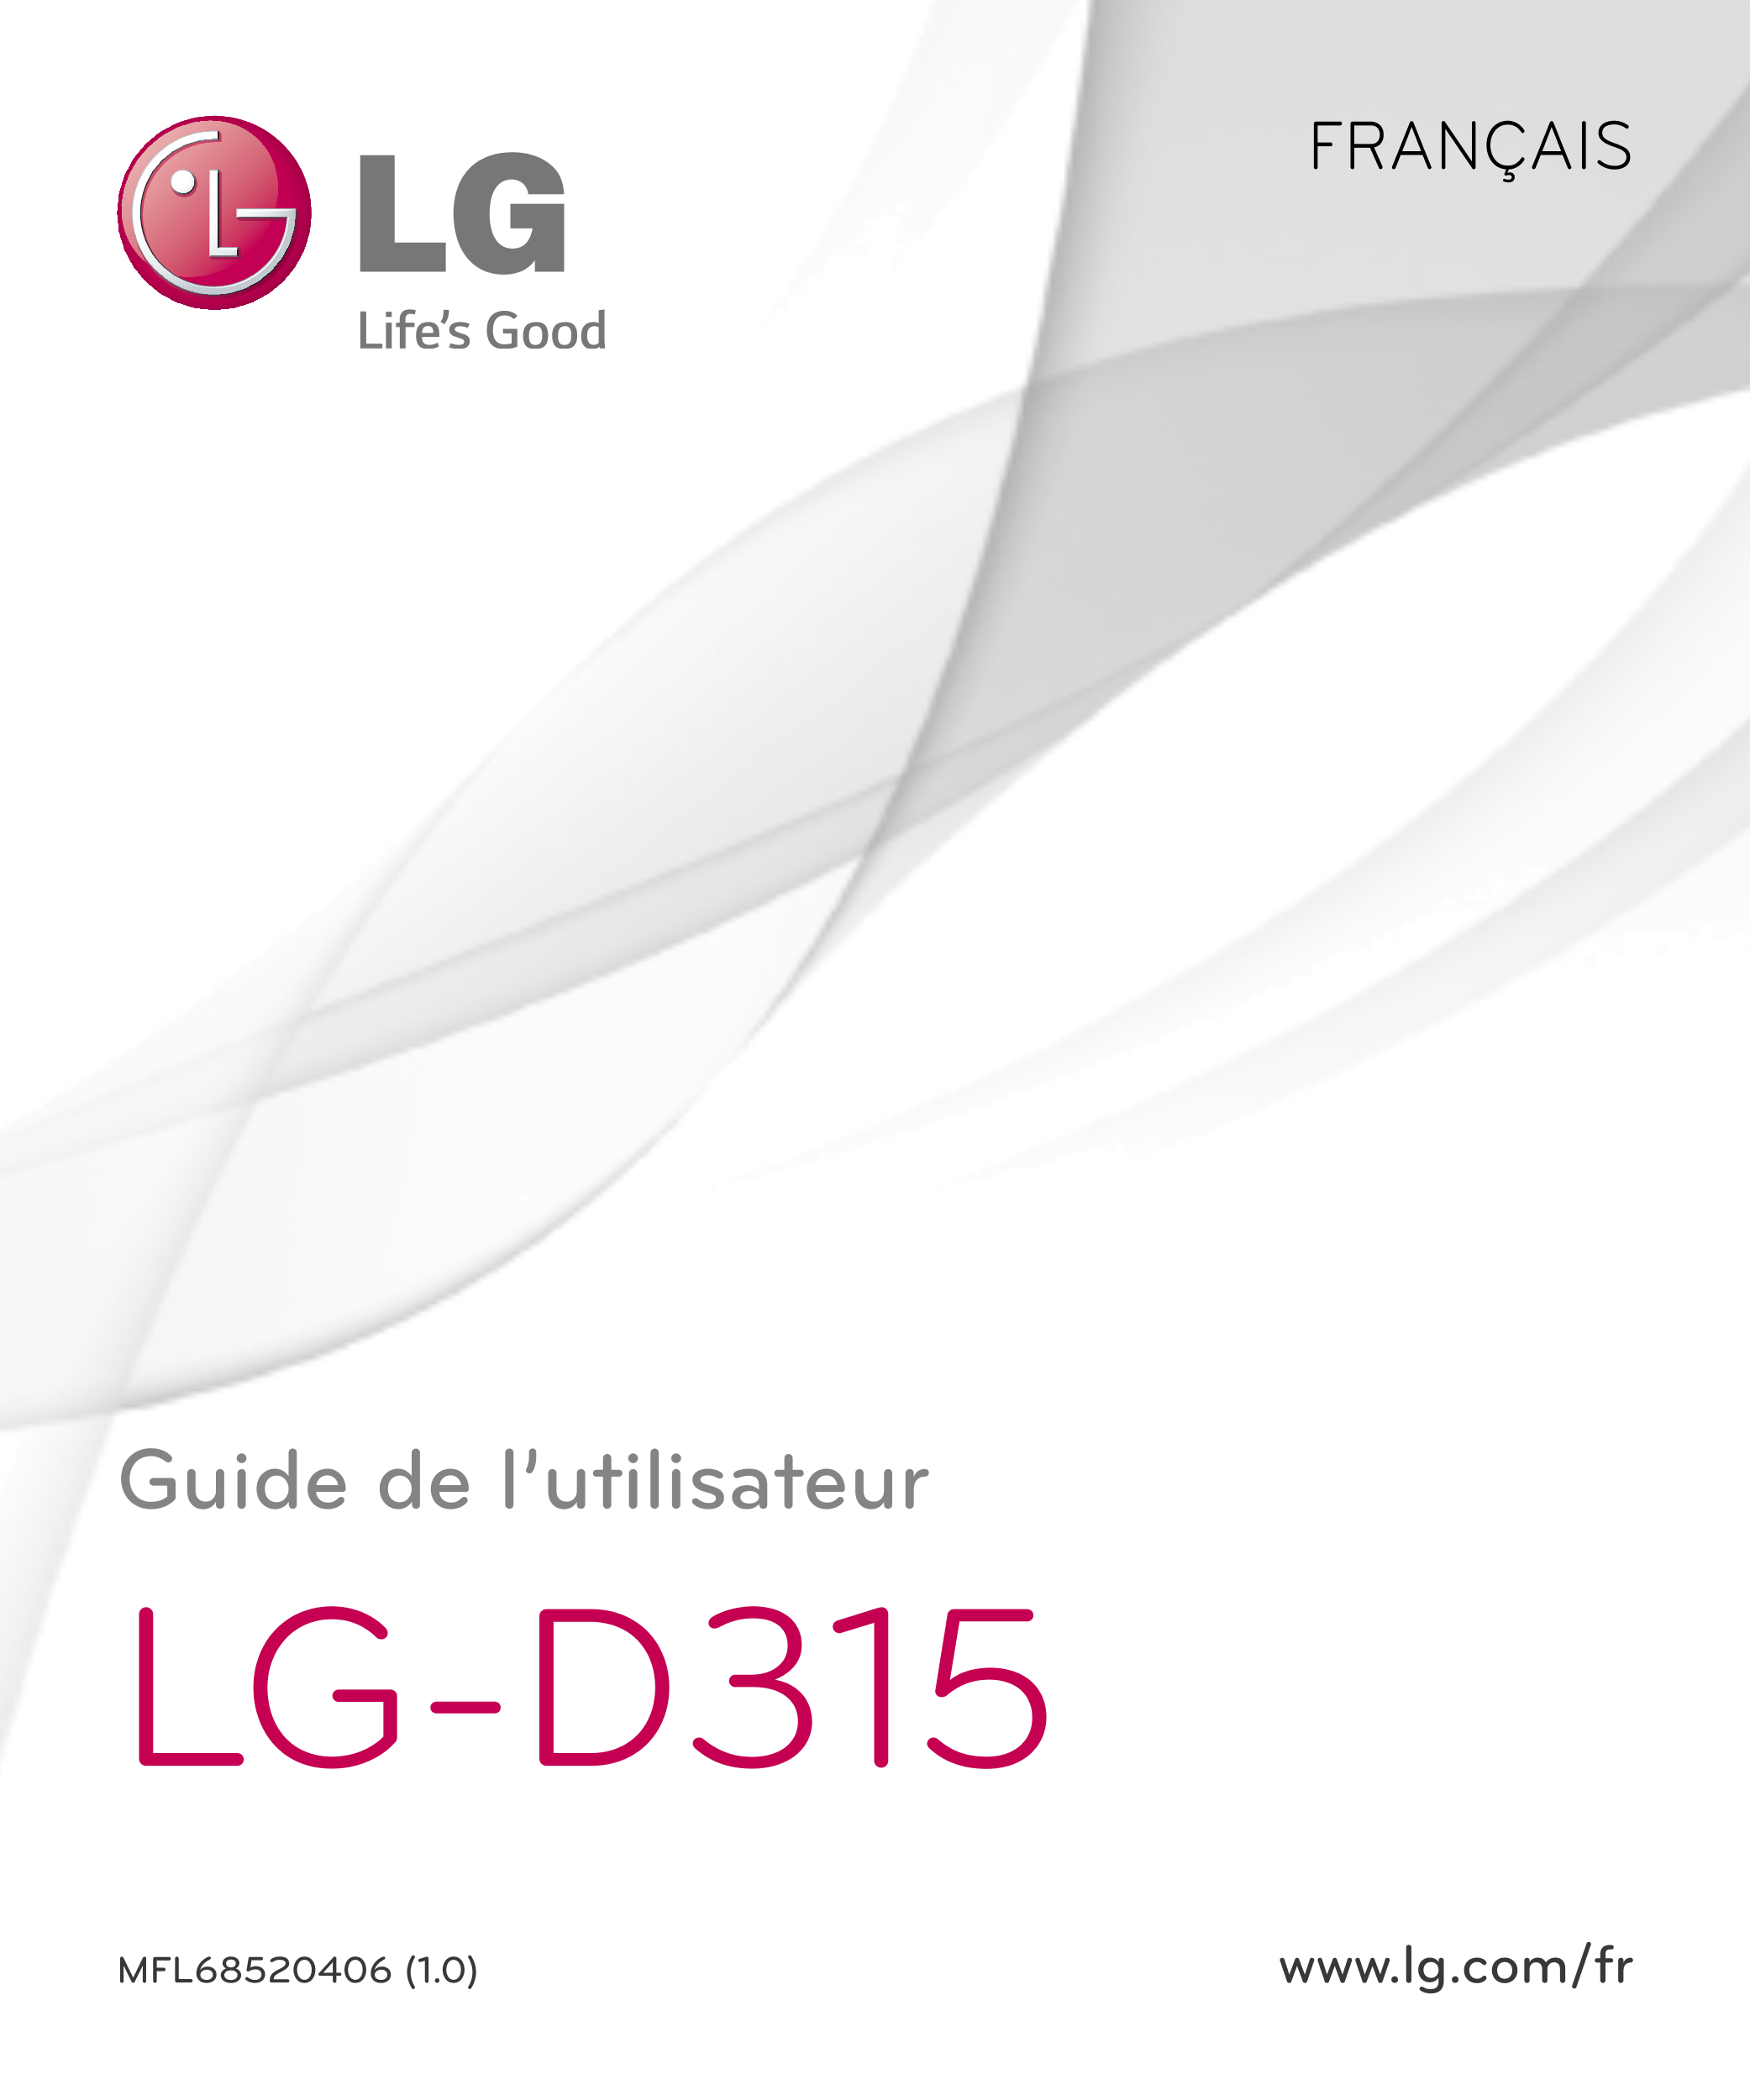 FRANÇAIS
Guide de l’utilisateur
LG-D315
MFL68520406 (1.0) www.lg.com/fr
1